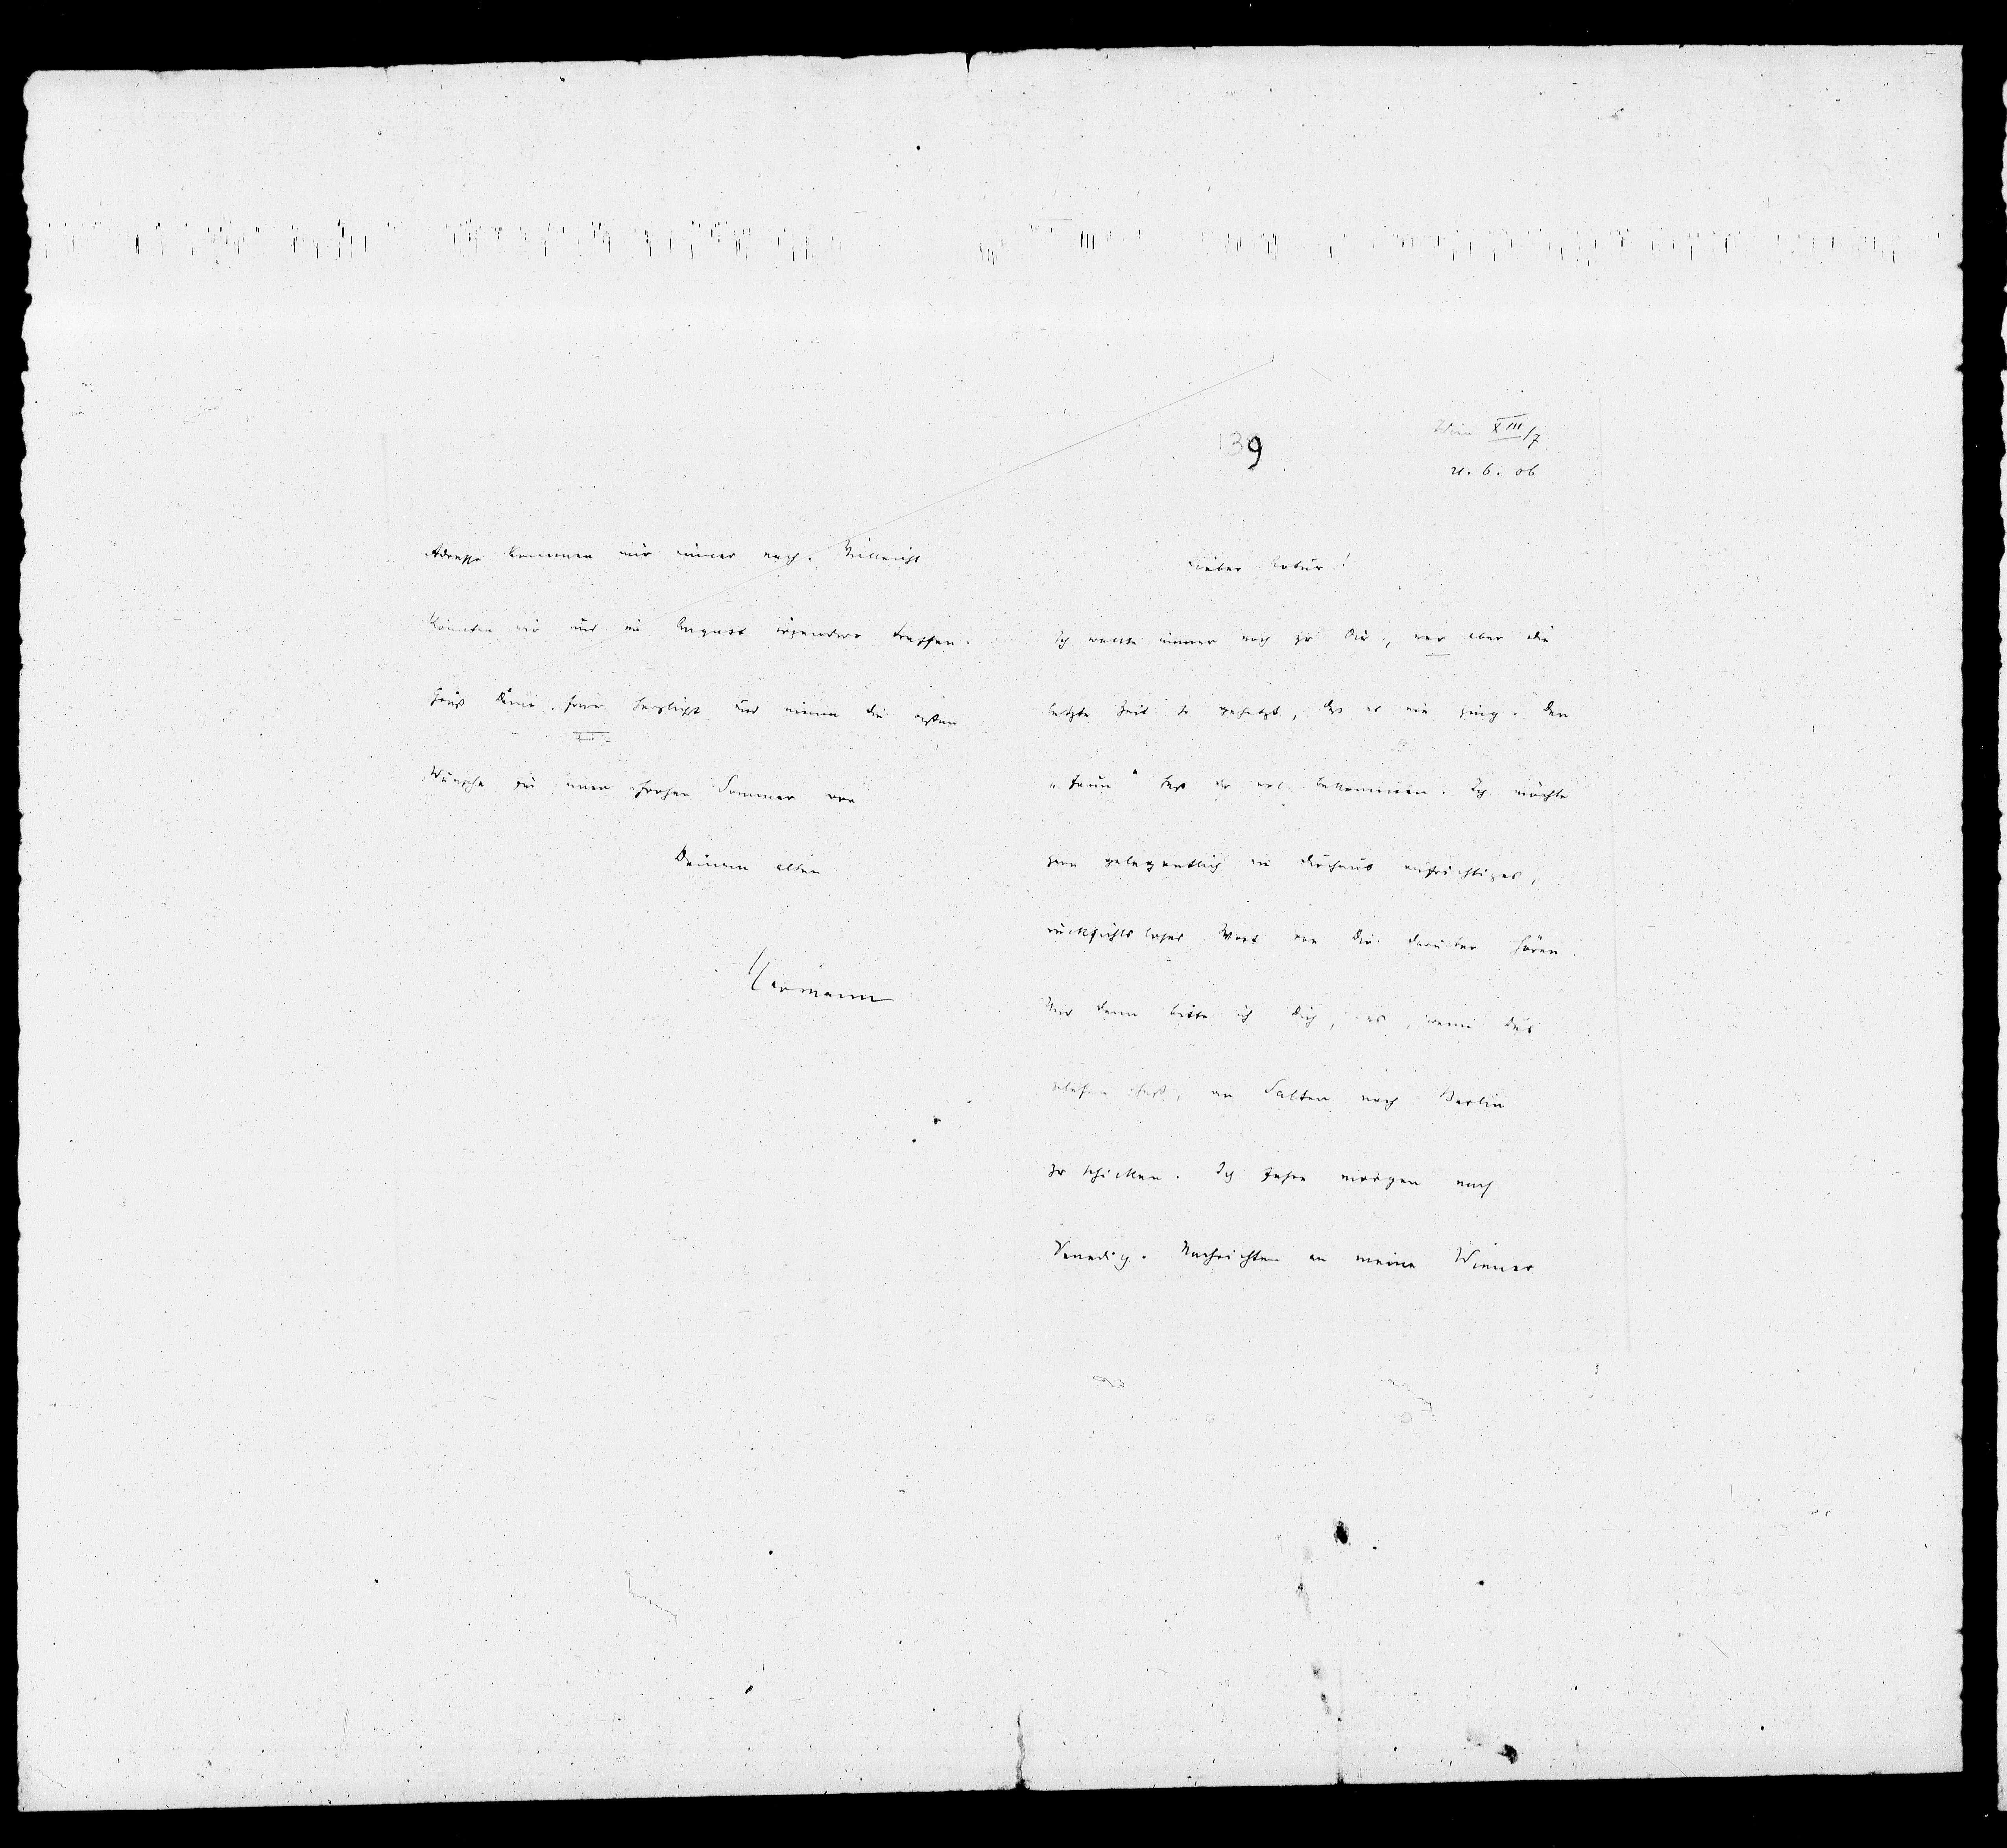 Vorschaubild für Bahr, Hermann_2 Bahr an Schnitzler, Originale, Seite 137